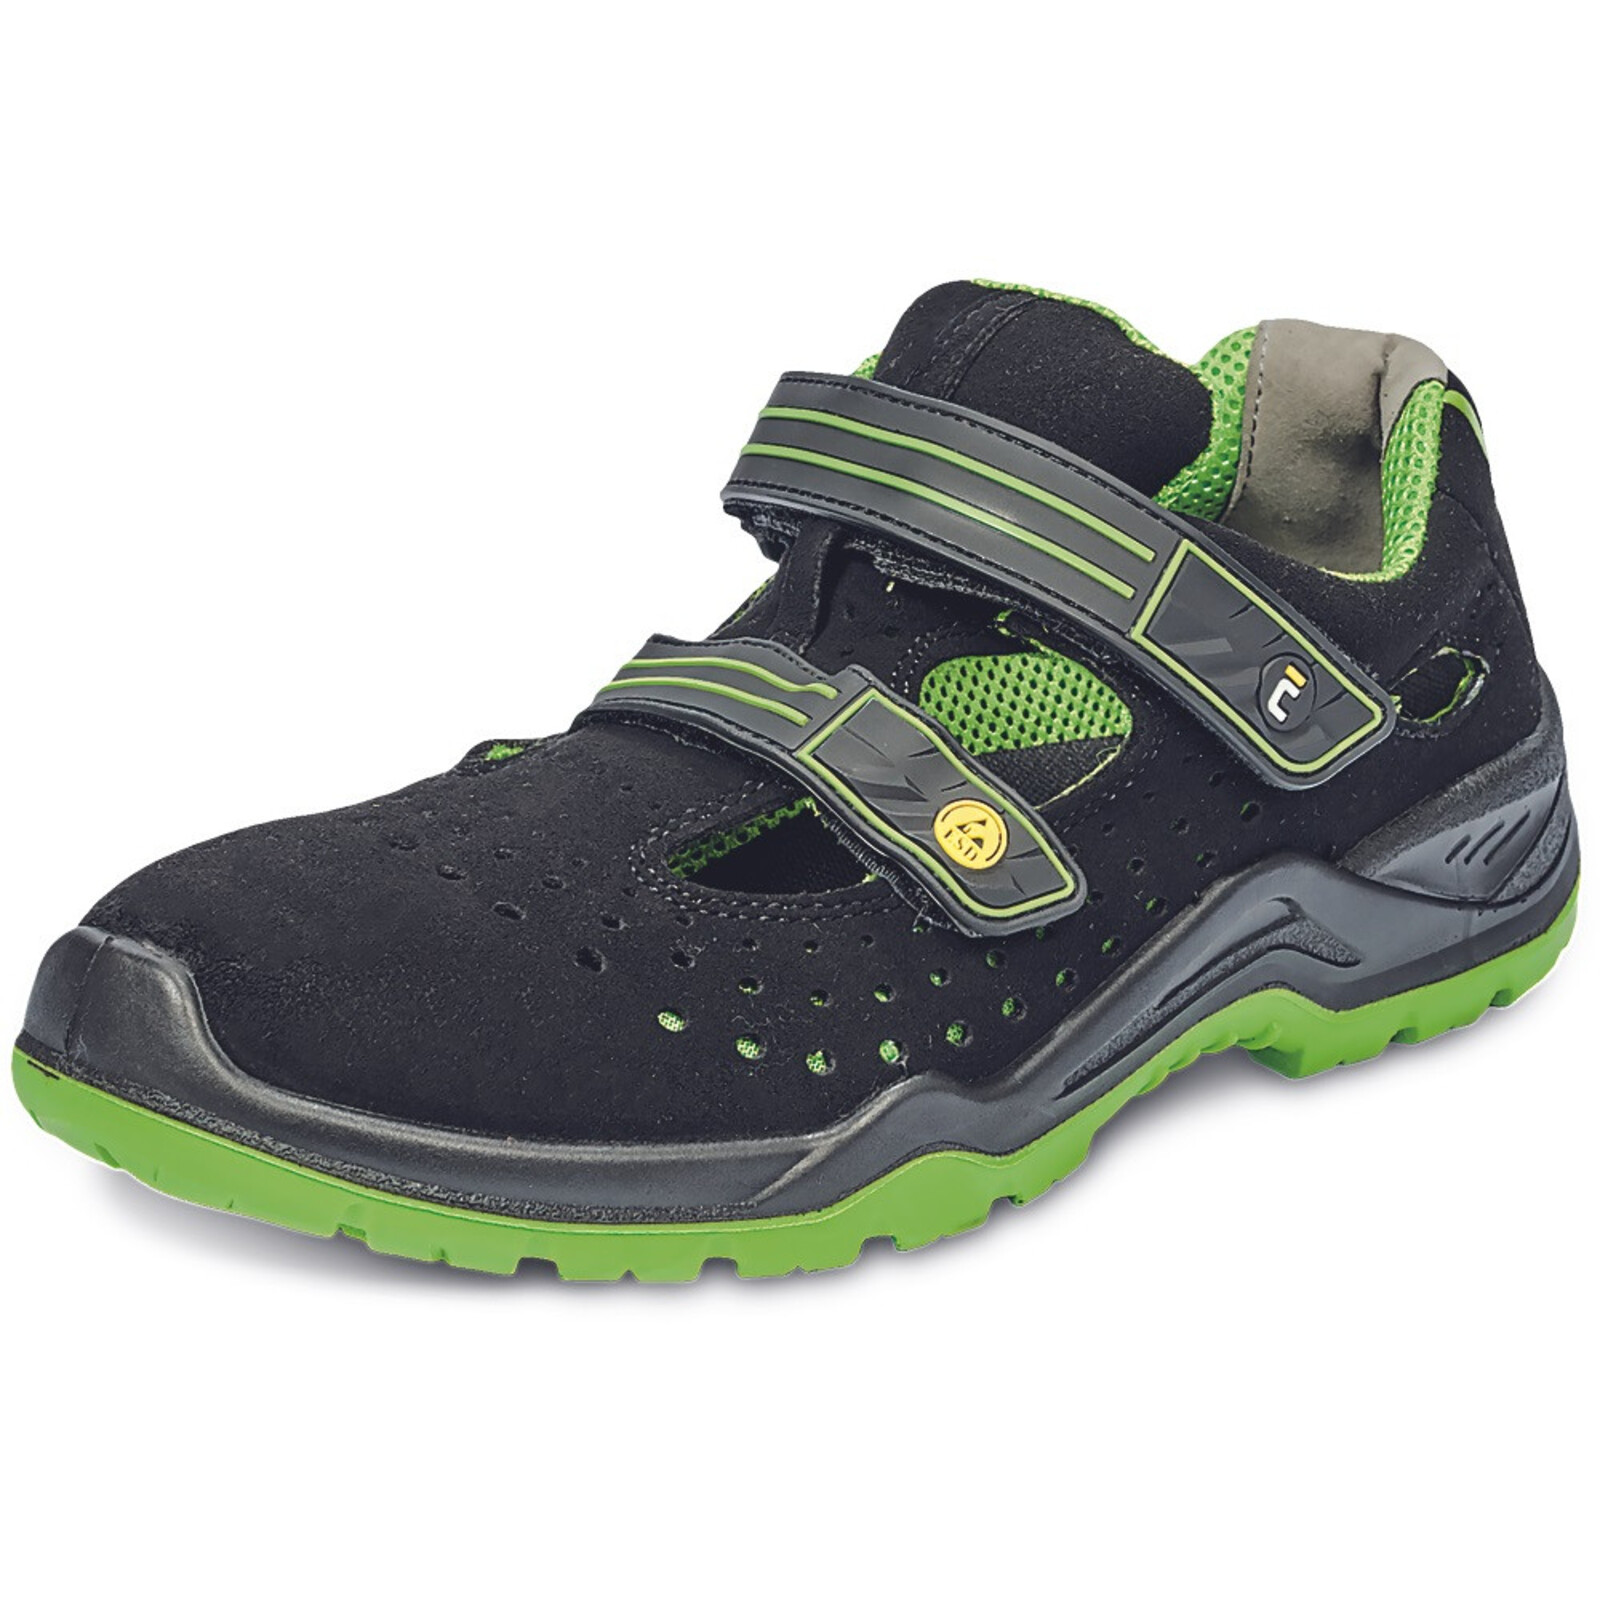 Bezpečnostné sandále Cerva Halwill MF ESD S1P SRC - veľkosť: 36, farba: čierna/zelená